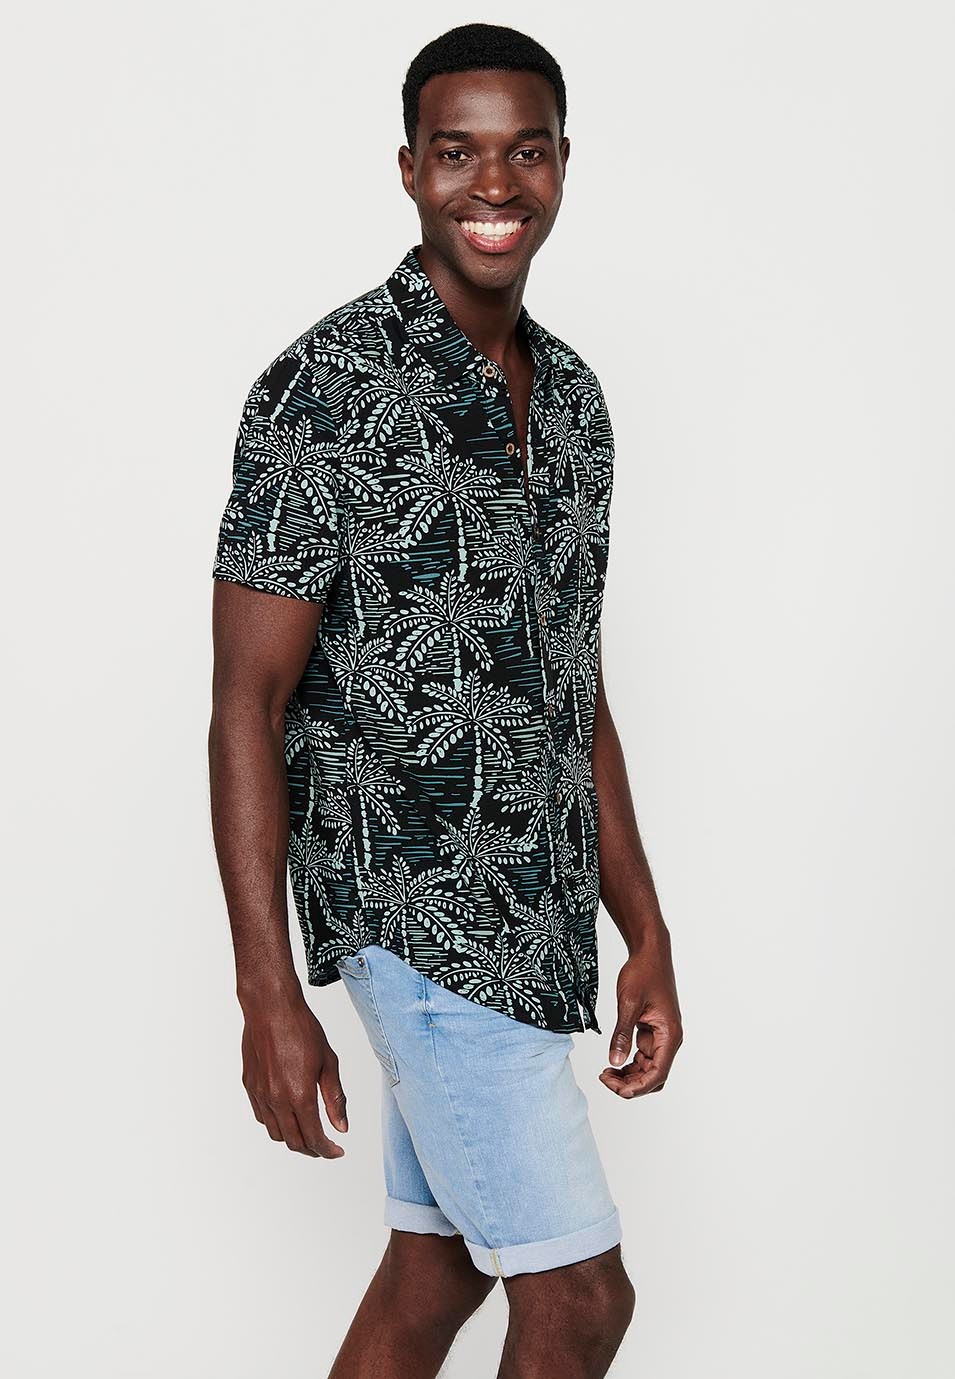 Chemise à manches courtes et col de chemise multicolore à imprimé floral tropical pour hommes